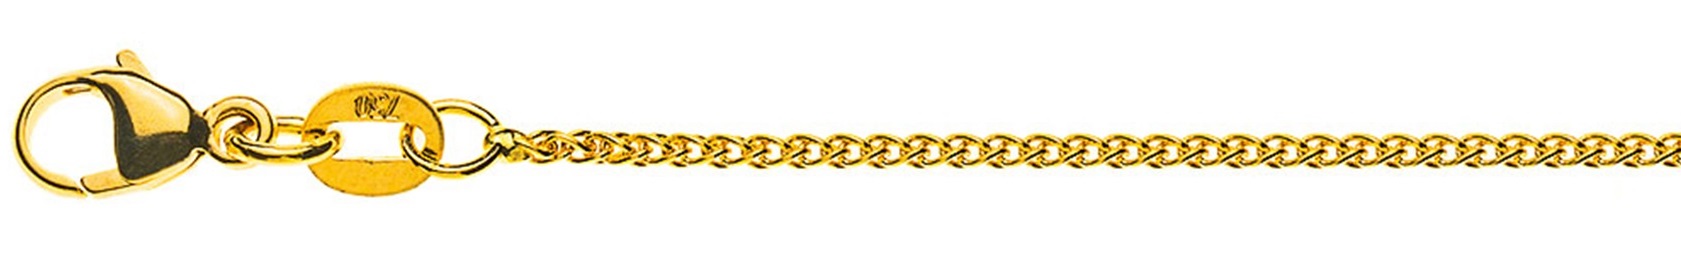 AURONOS Prestige Halskette Gelbgold 18K Zopfkette 55cm 1.2mm